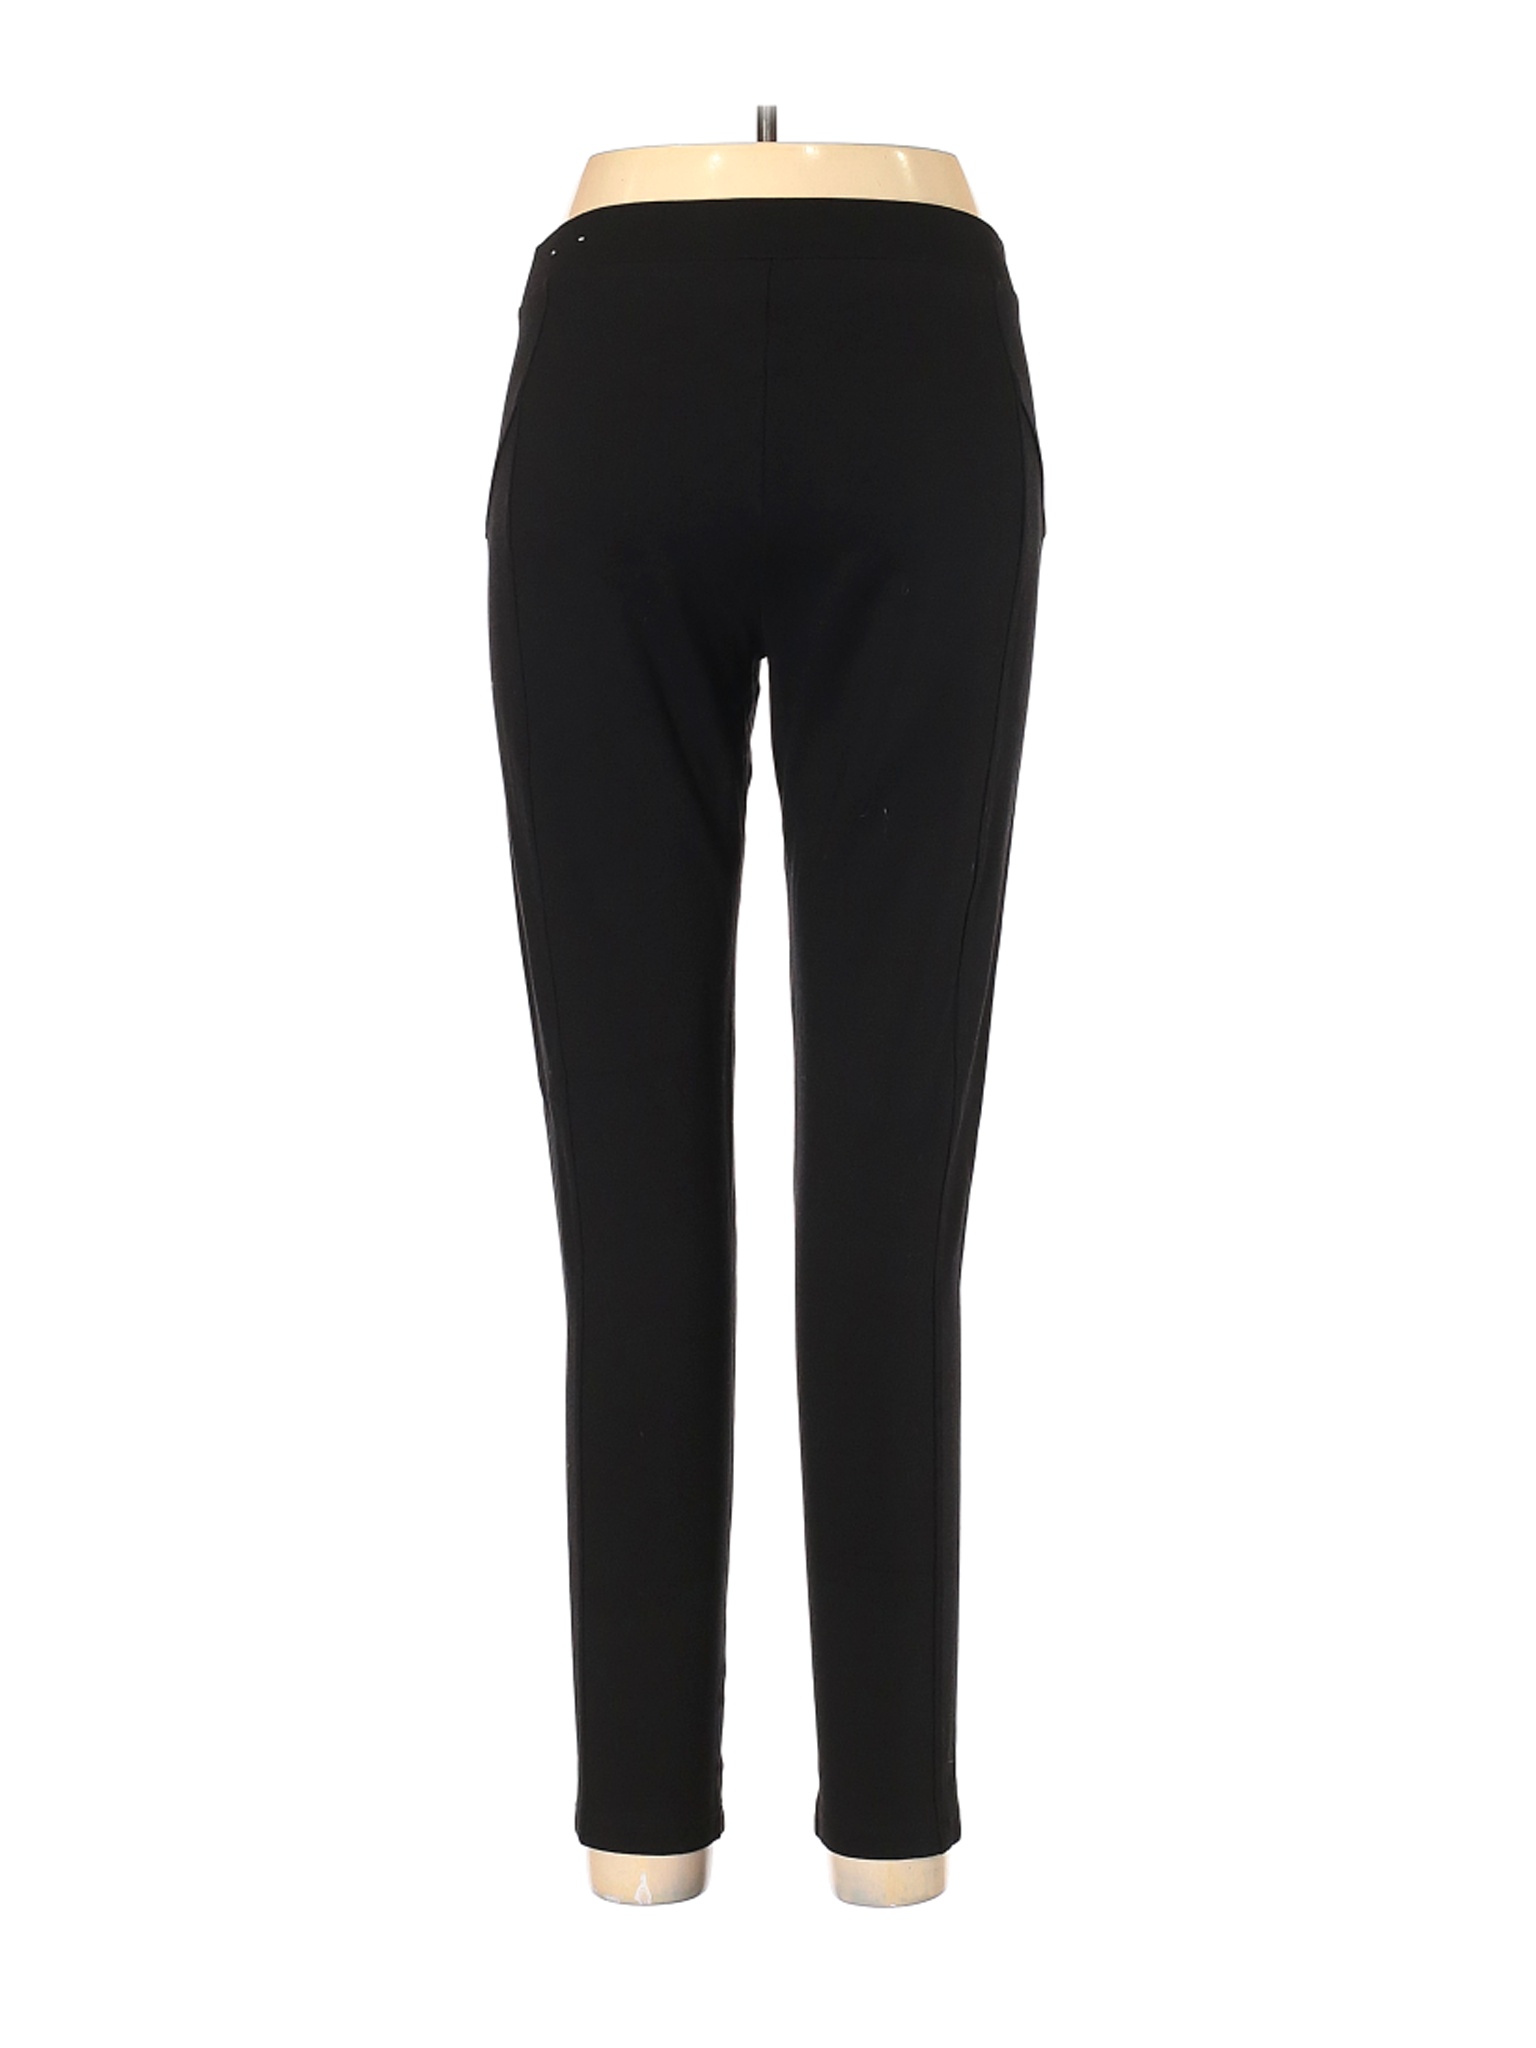 Company Ellen Tracy Women Black Casual Pants L | eBay